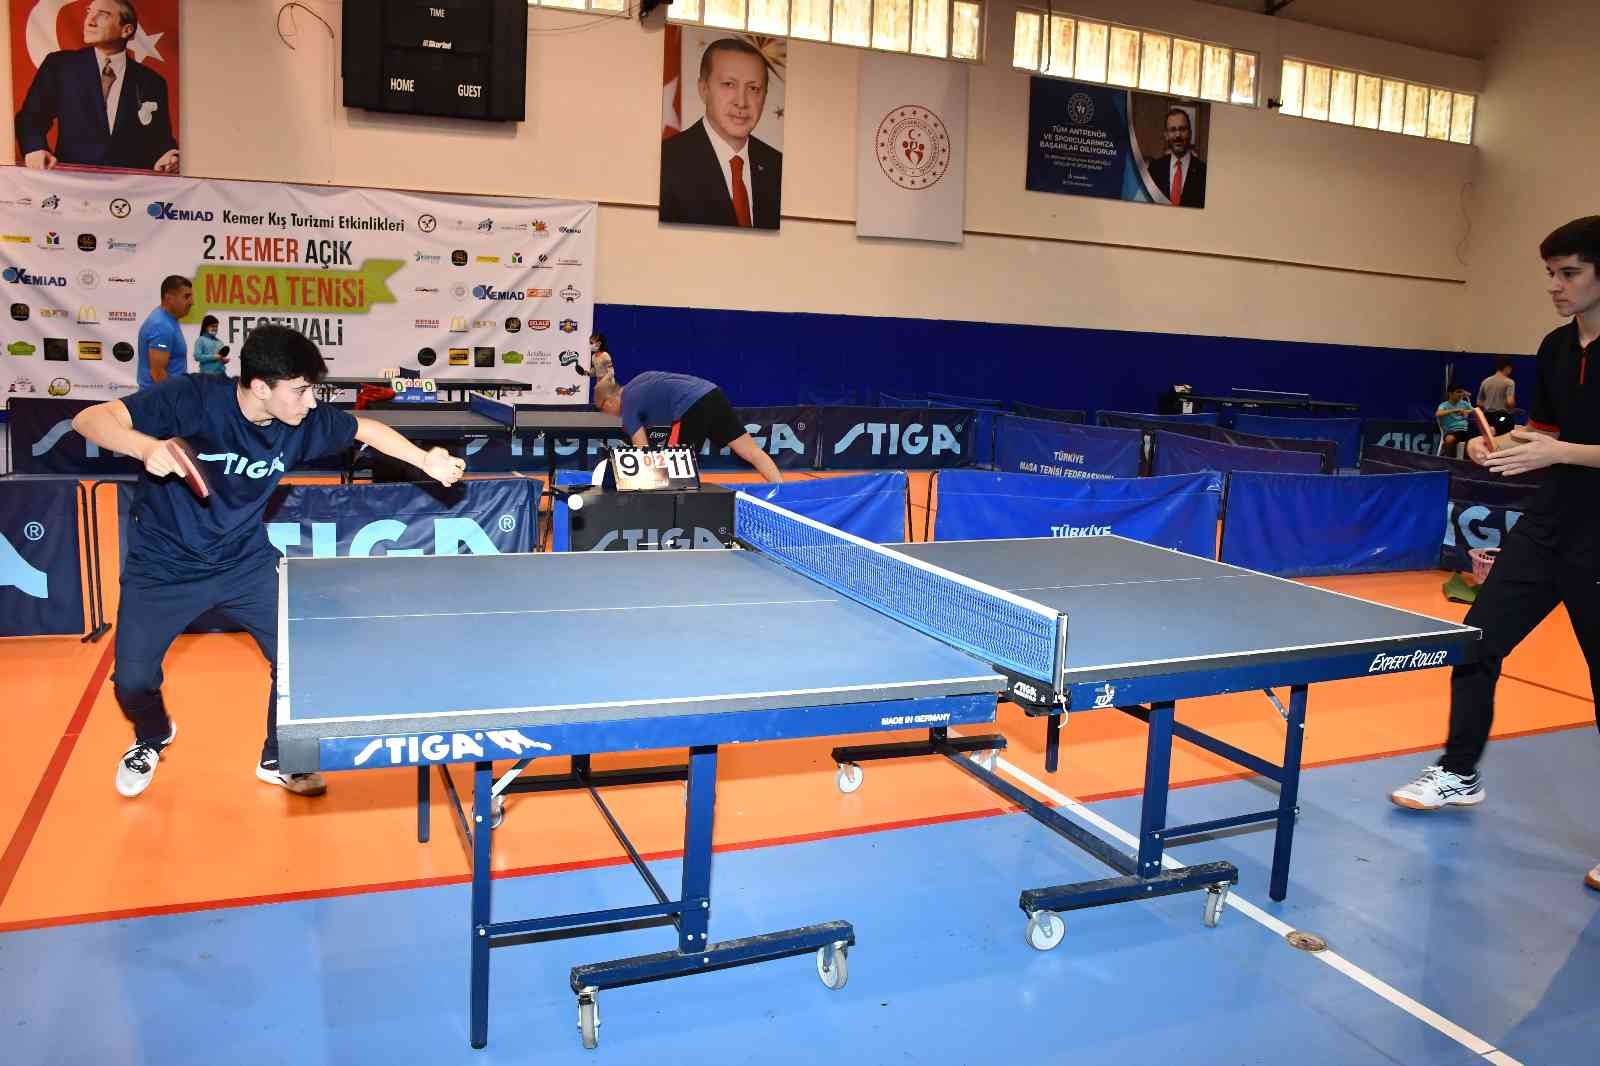 KEMİAD 2. Kemer Açık Masa Tenisi Turnuvası başladı #antalya